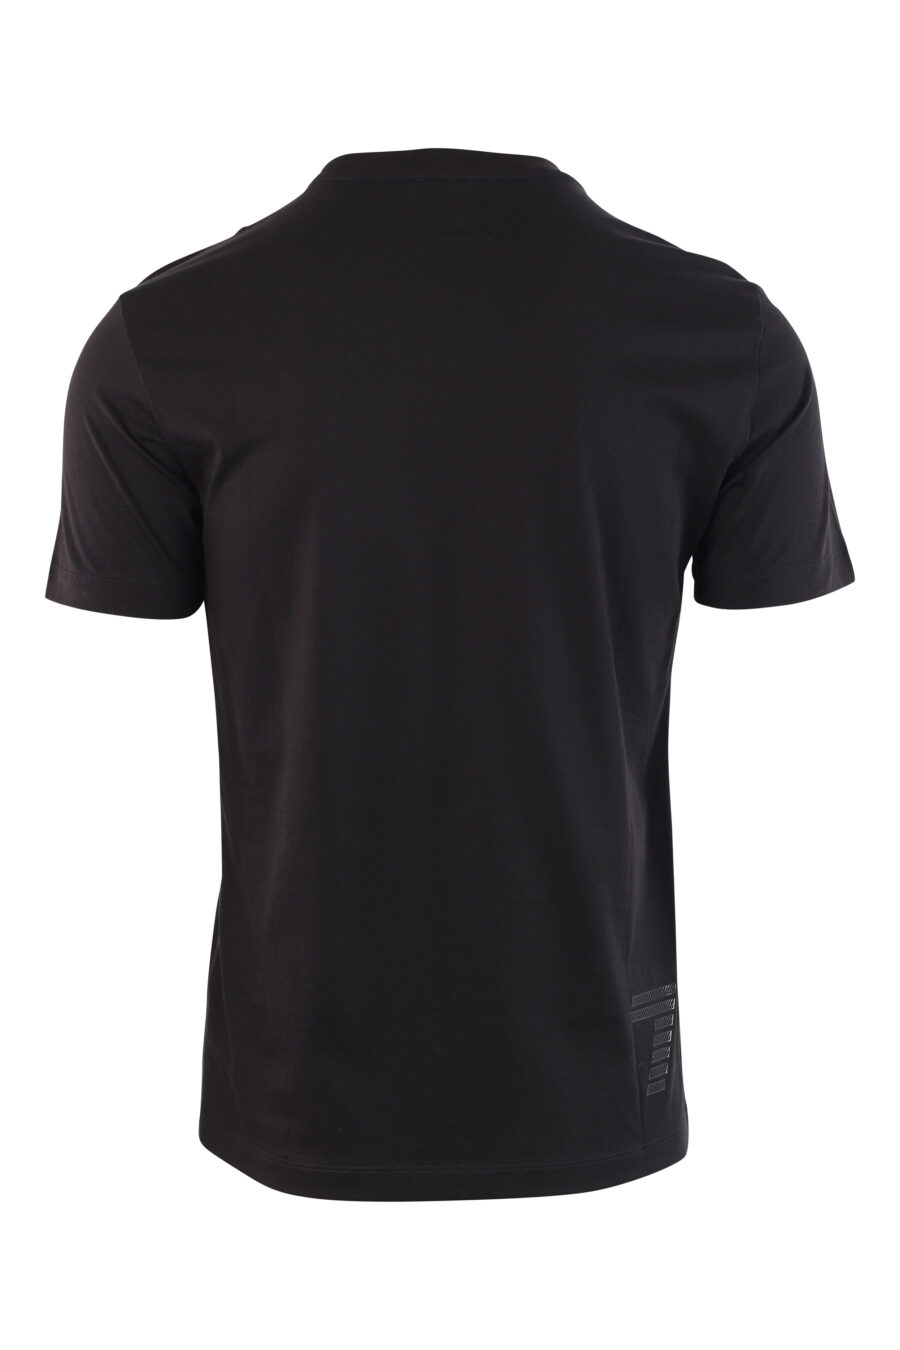 T-shirt noir avec maxilogo en caoutchouc argenté - IMG 3791